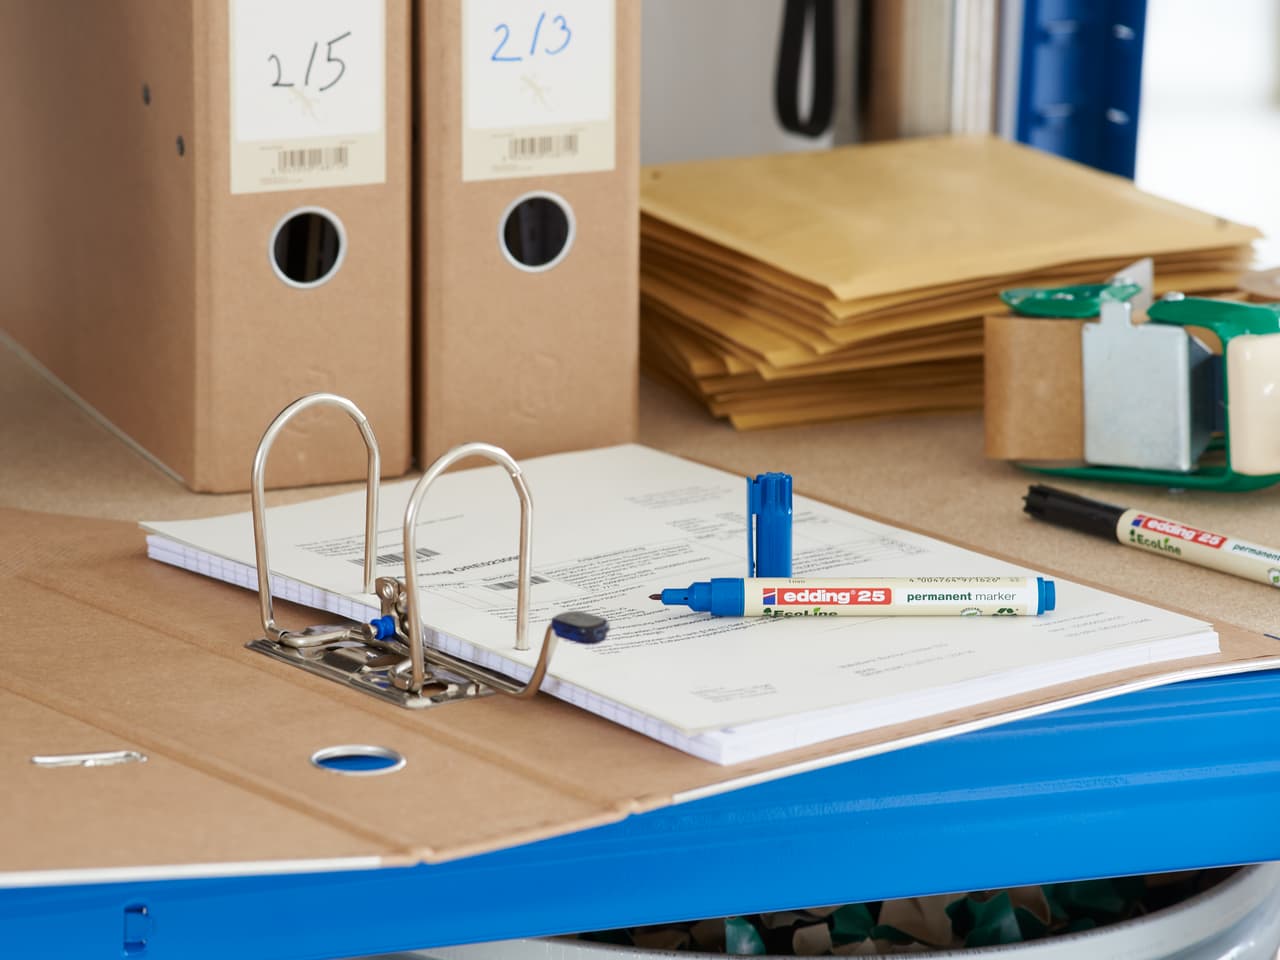 Ein offener Ringordner mit Dokumenten auf einem Schreibtisch, umgeben von Büromaterialien, darunter edding 25 EcoLine Permanentmarker, Stiften und Aufbewahrungsboxen aus Pappe.